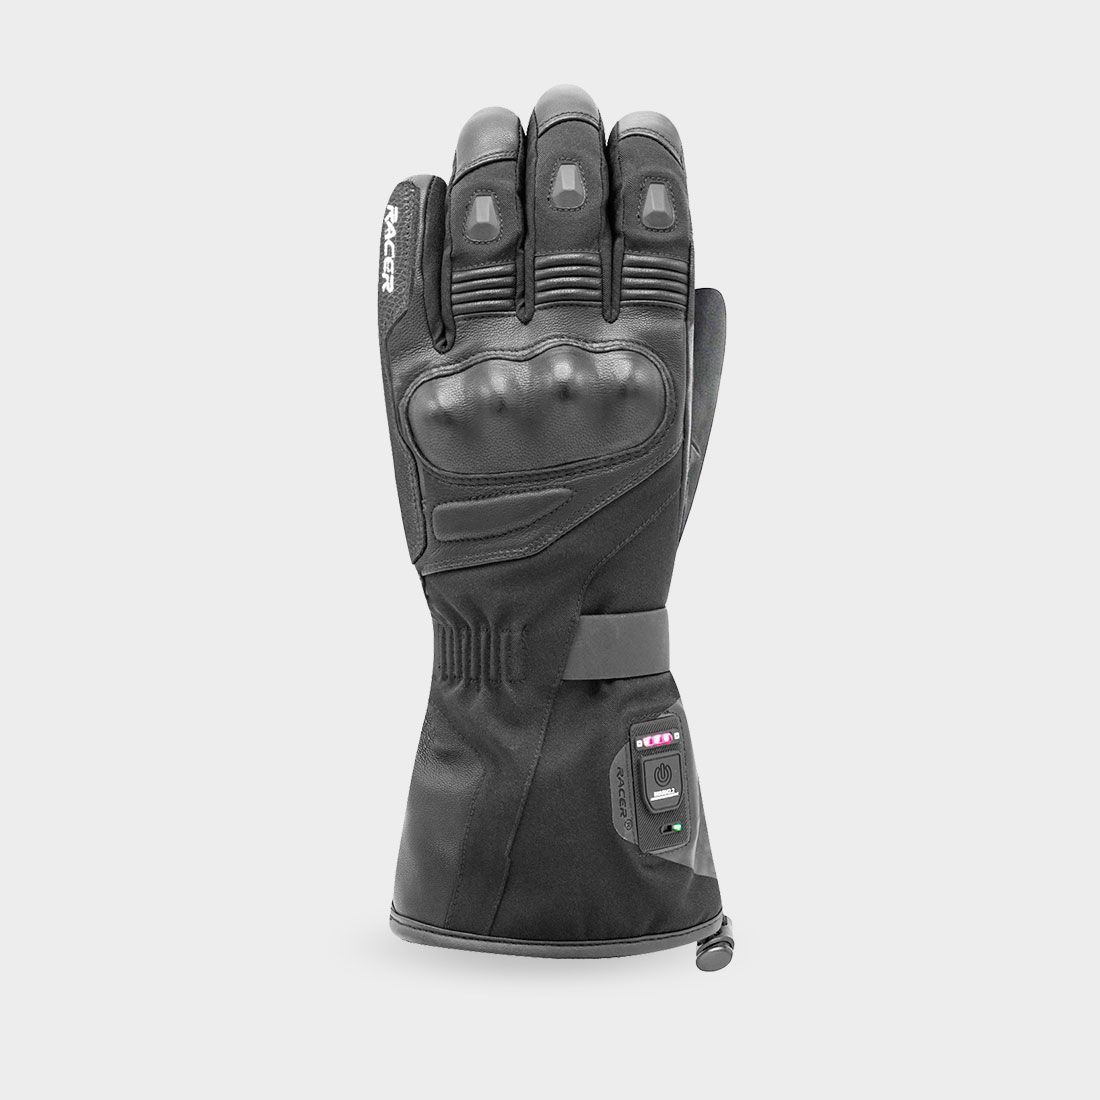 gloves HEAT4, RACER (black)